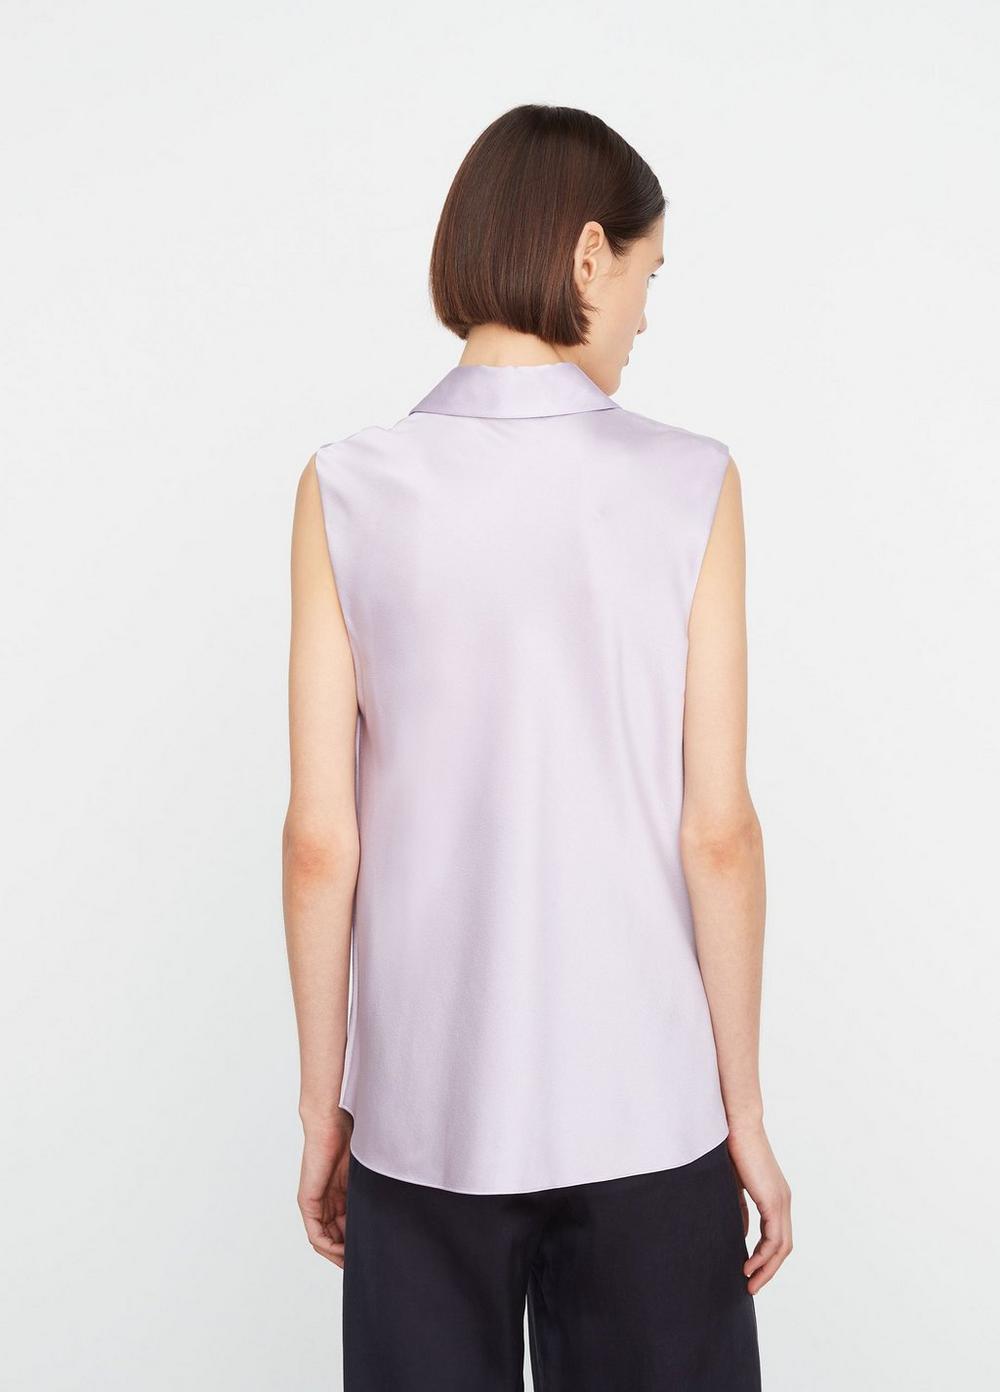 Silk Sleeveless Bias Shirt in Shirts & Tees